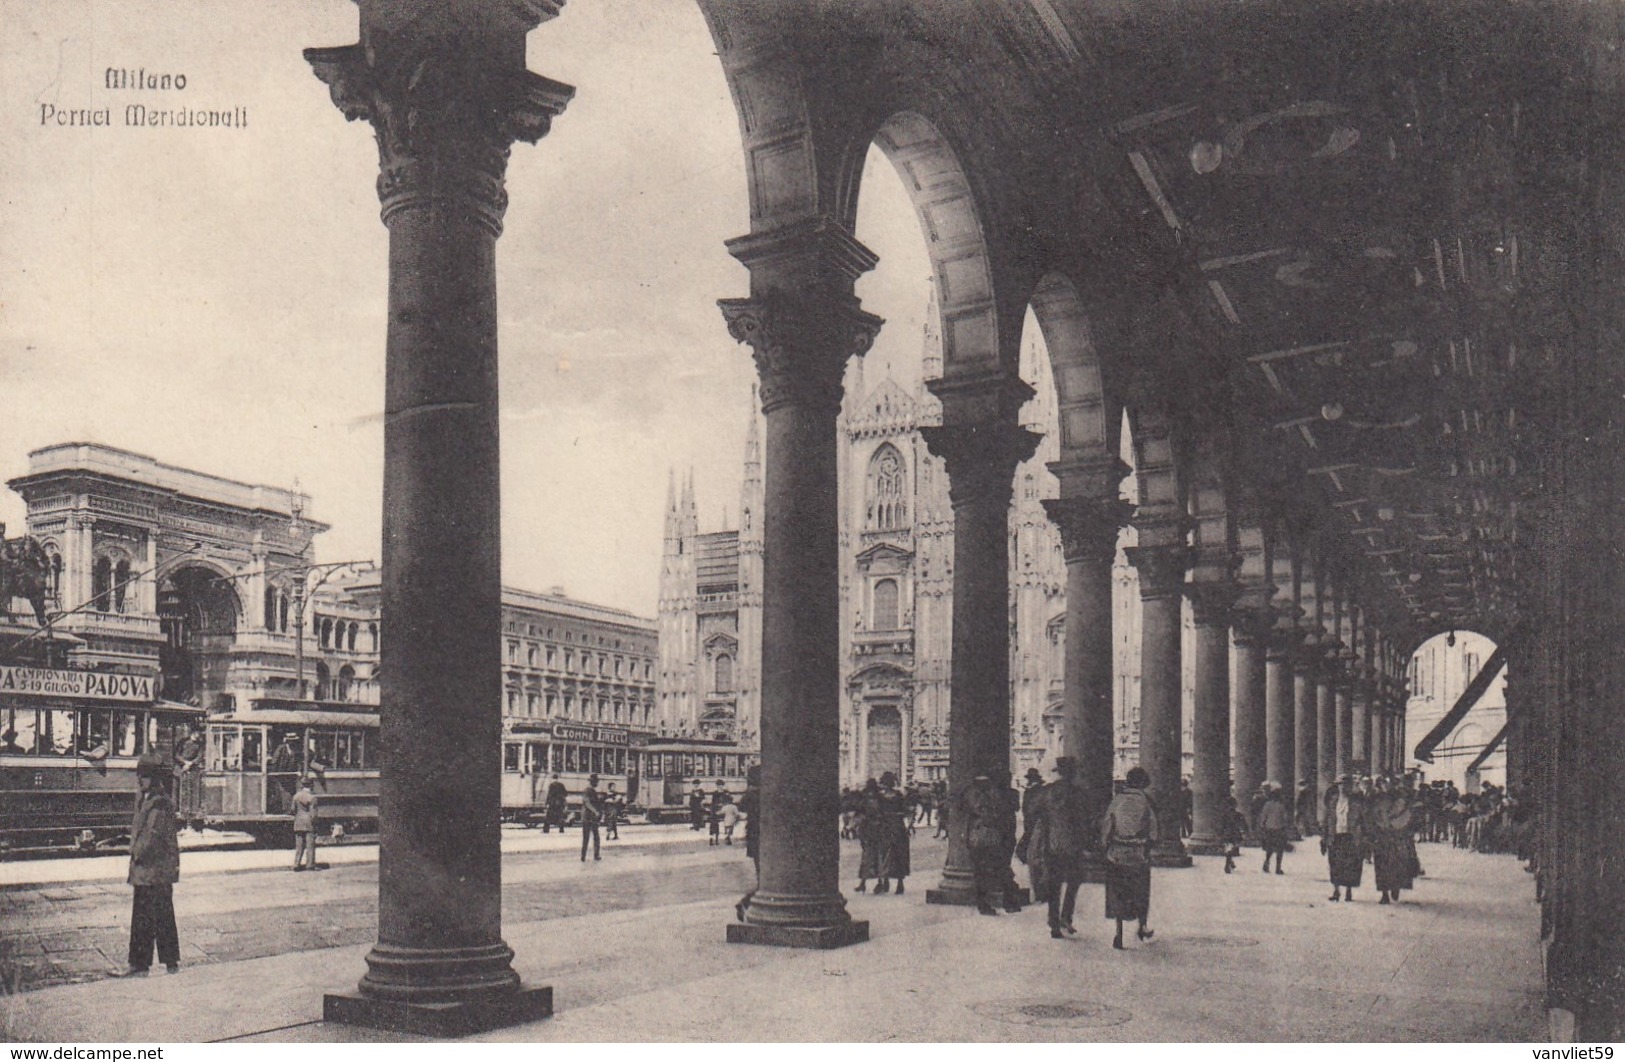 MILANO-PIAZZA MERIDIONALI-CARTOLINA NON VIAGGIATA -ANNO 1910-1920 - Milano